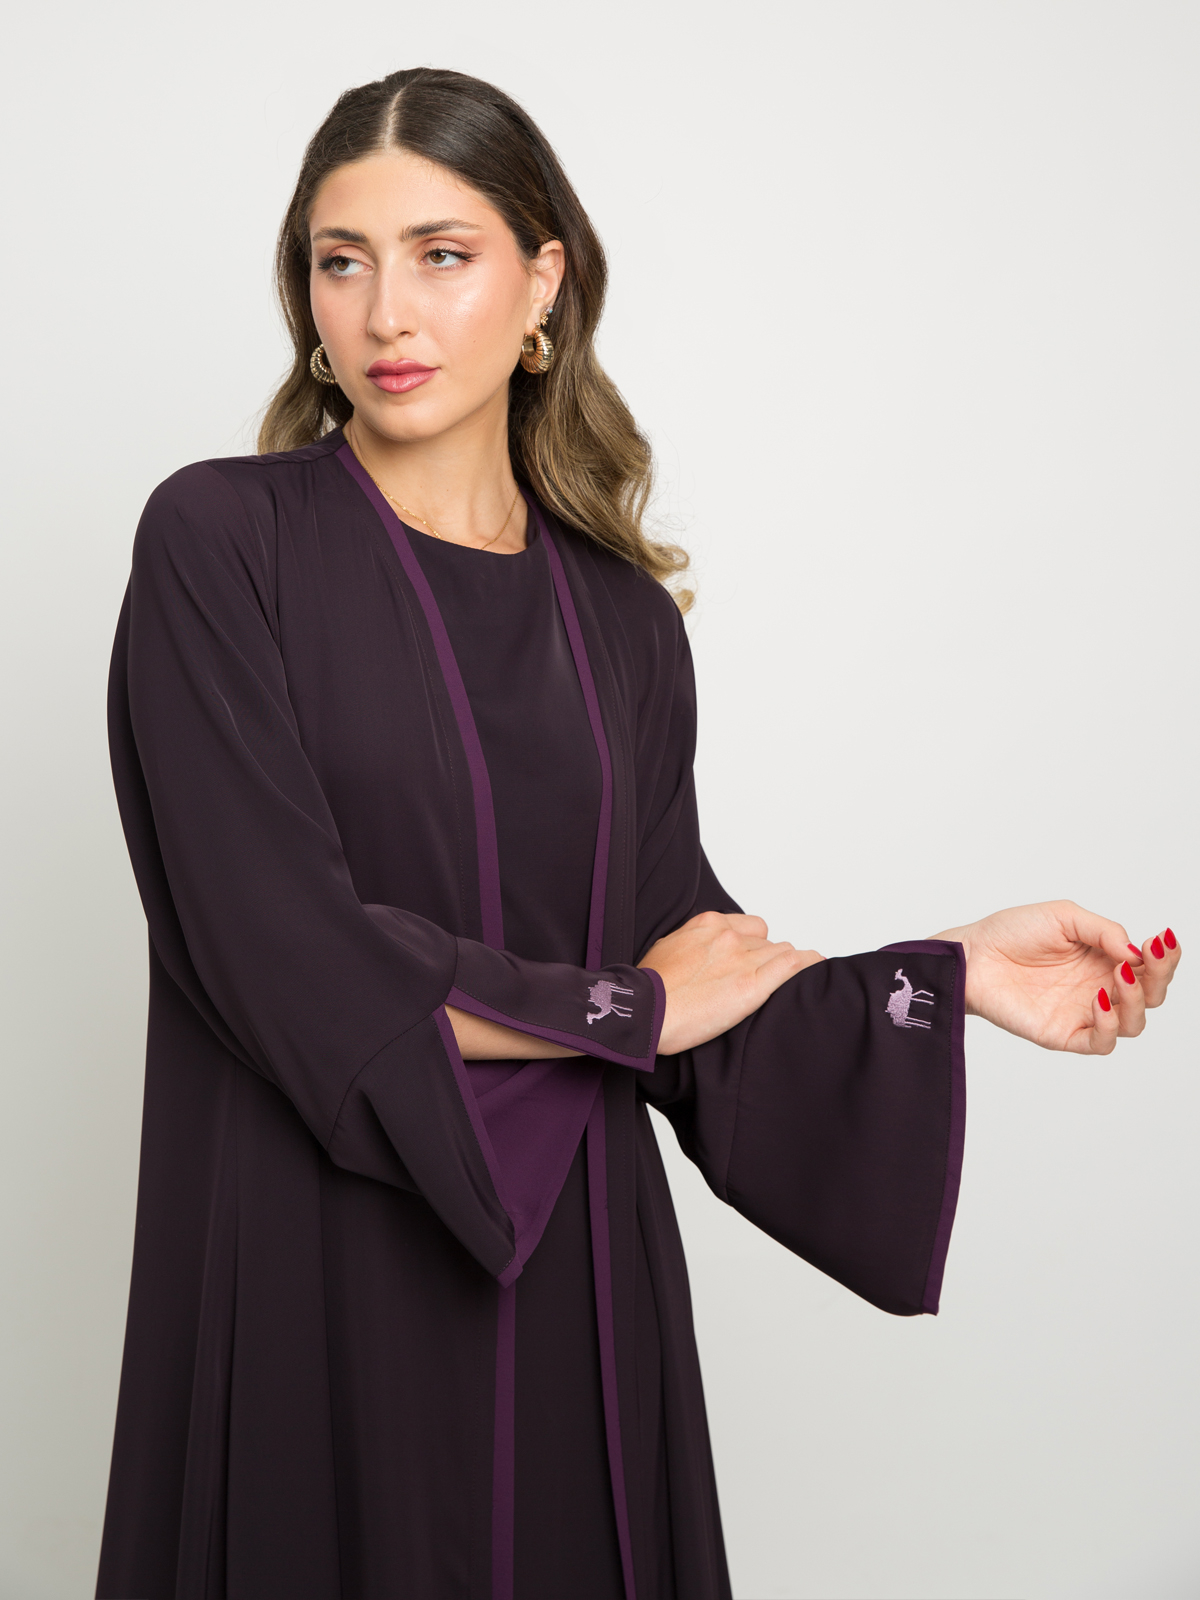 The Camel Purple & Mauve Abaya Matching Set